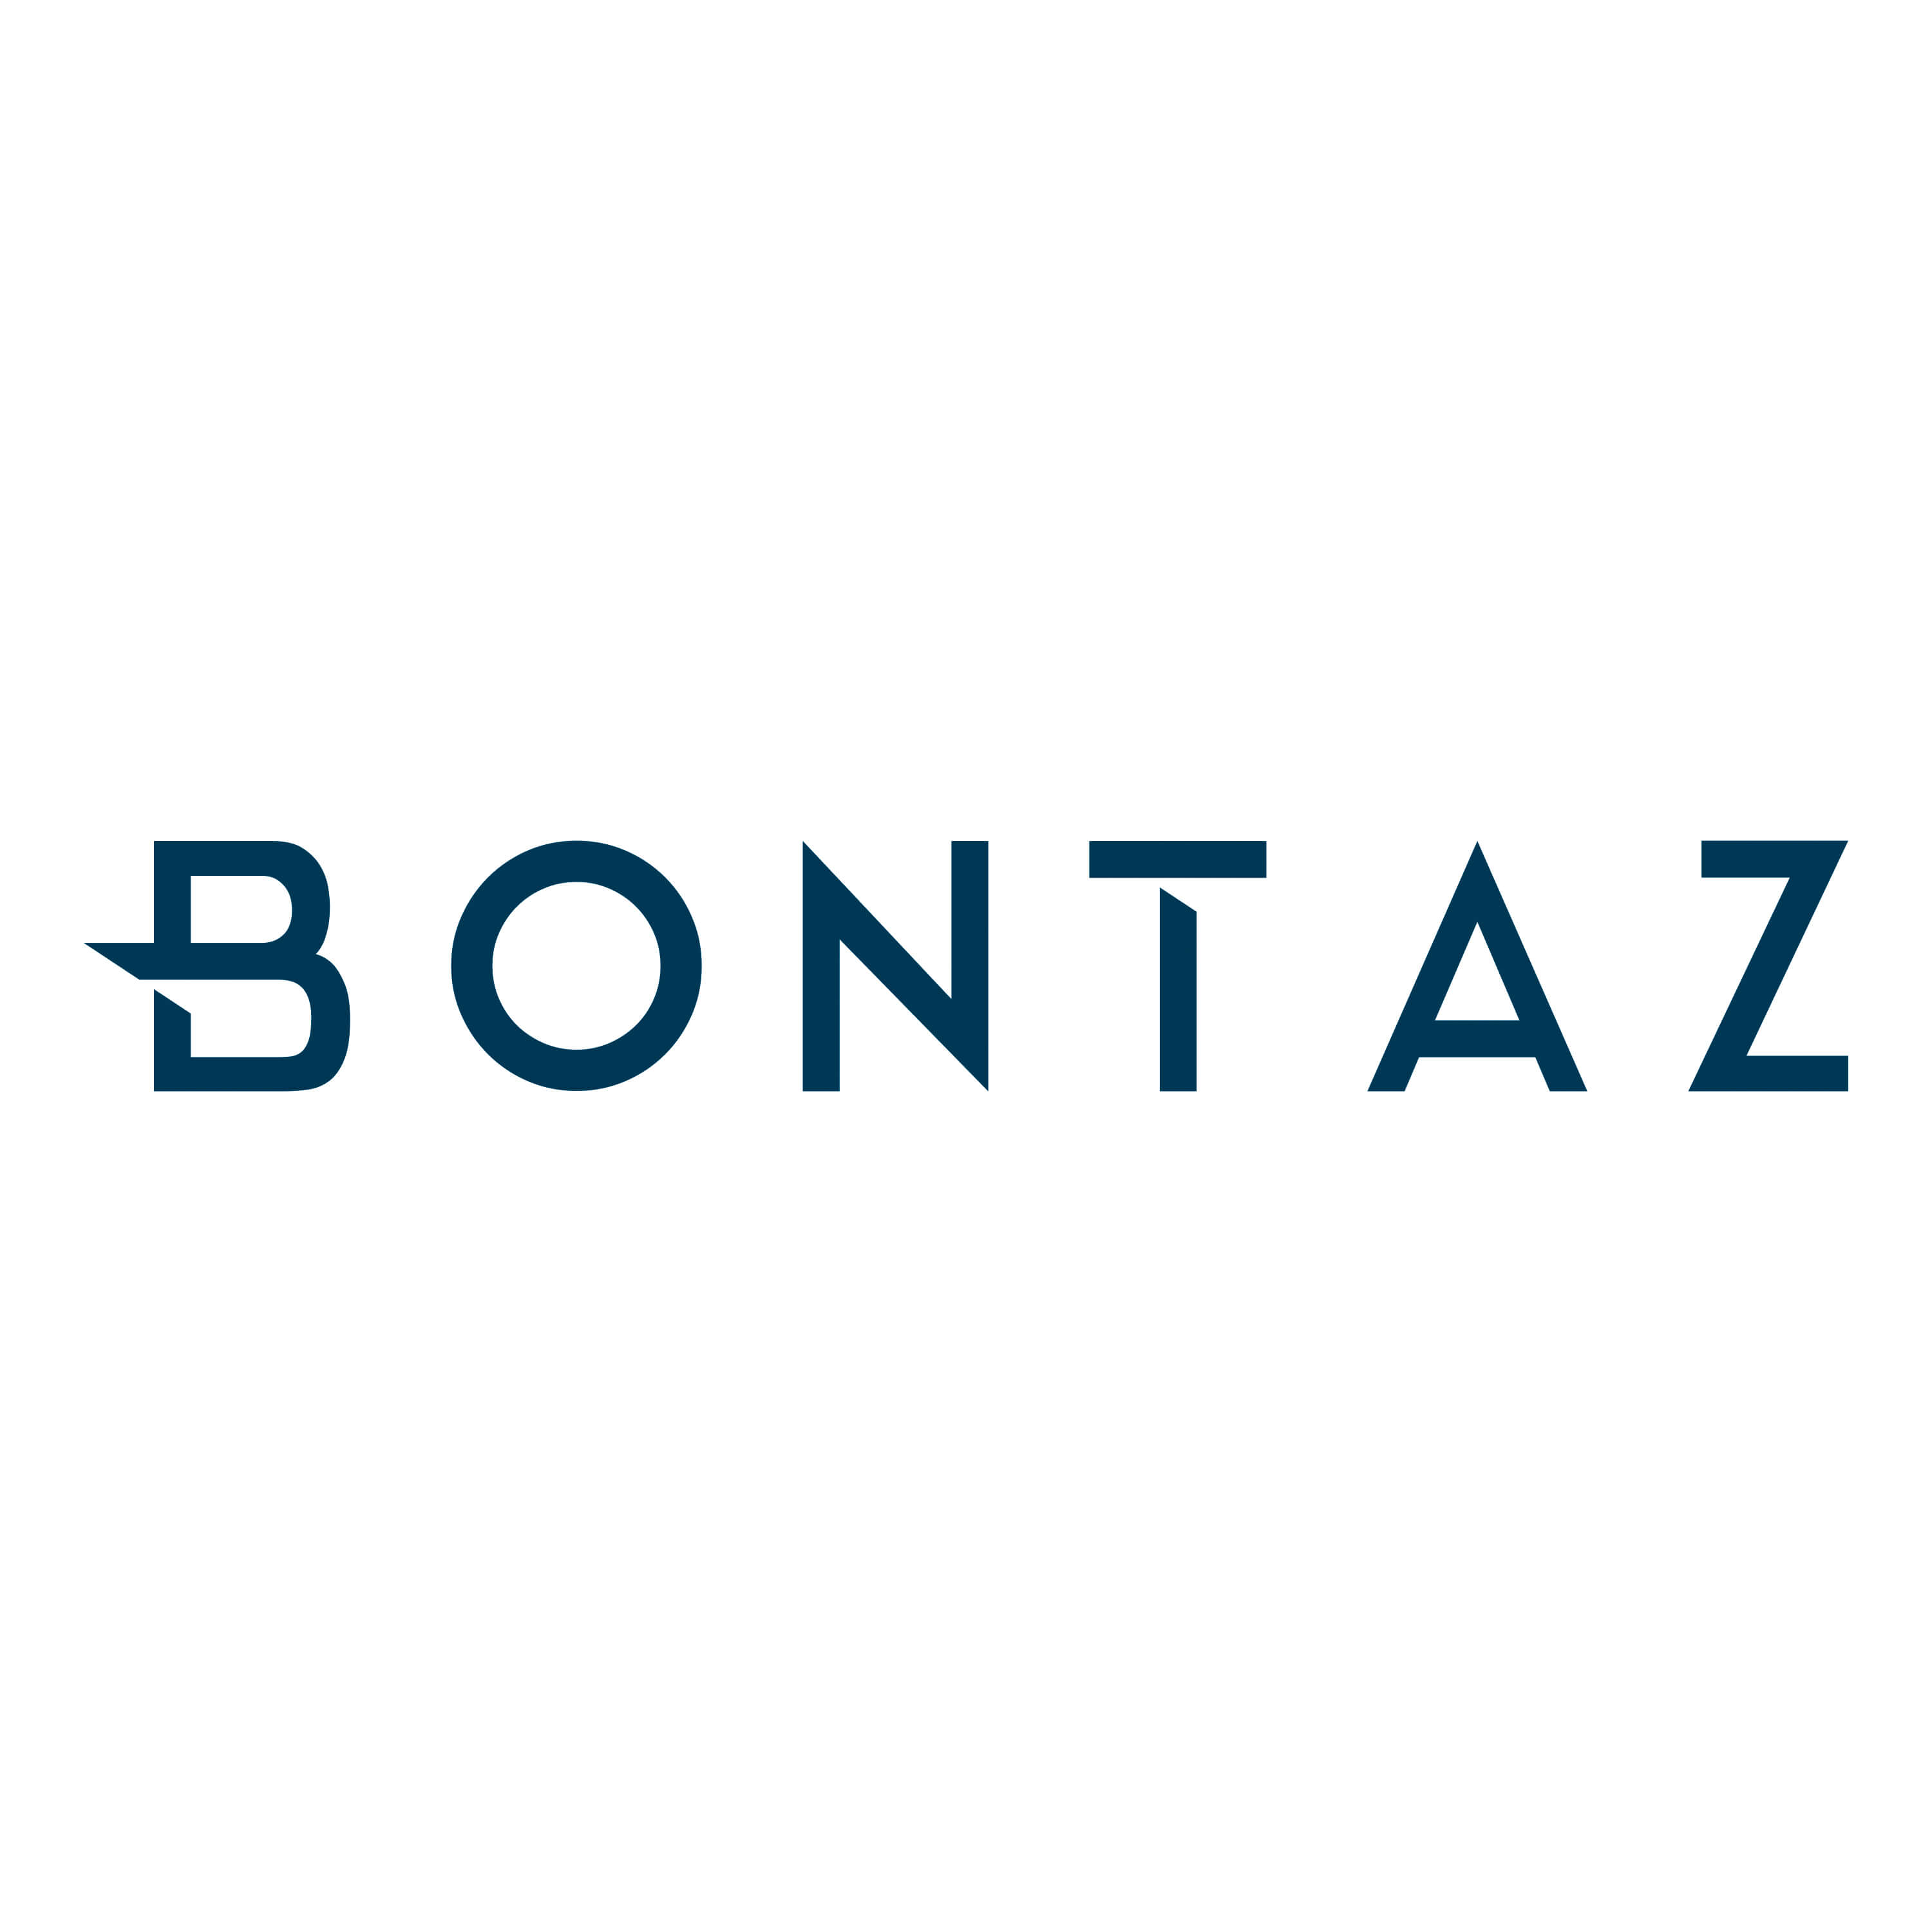 Bontaz-Identity-logo-20170706-OK